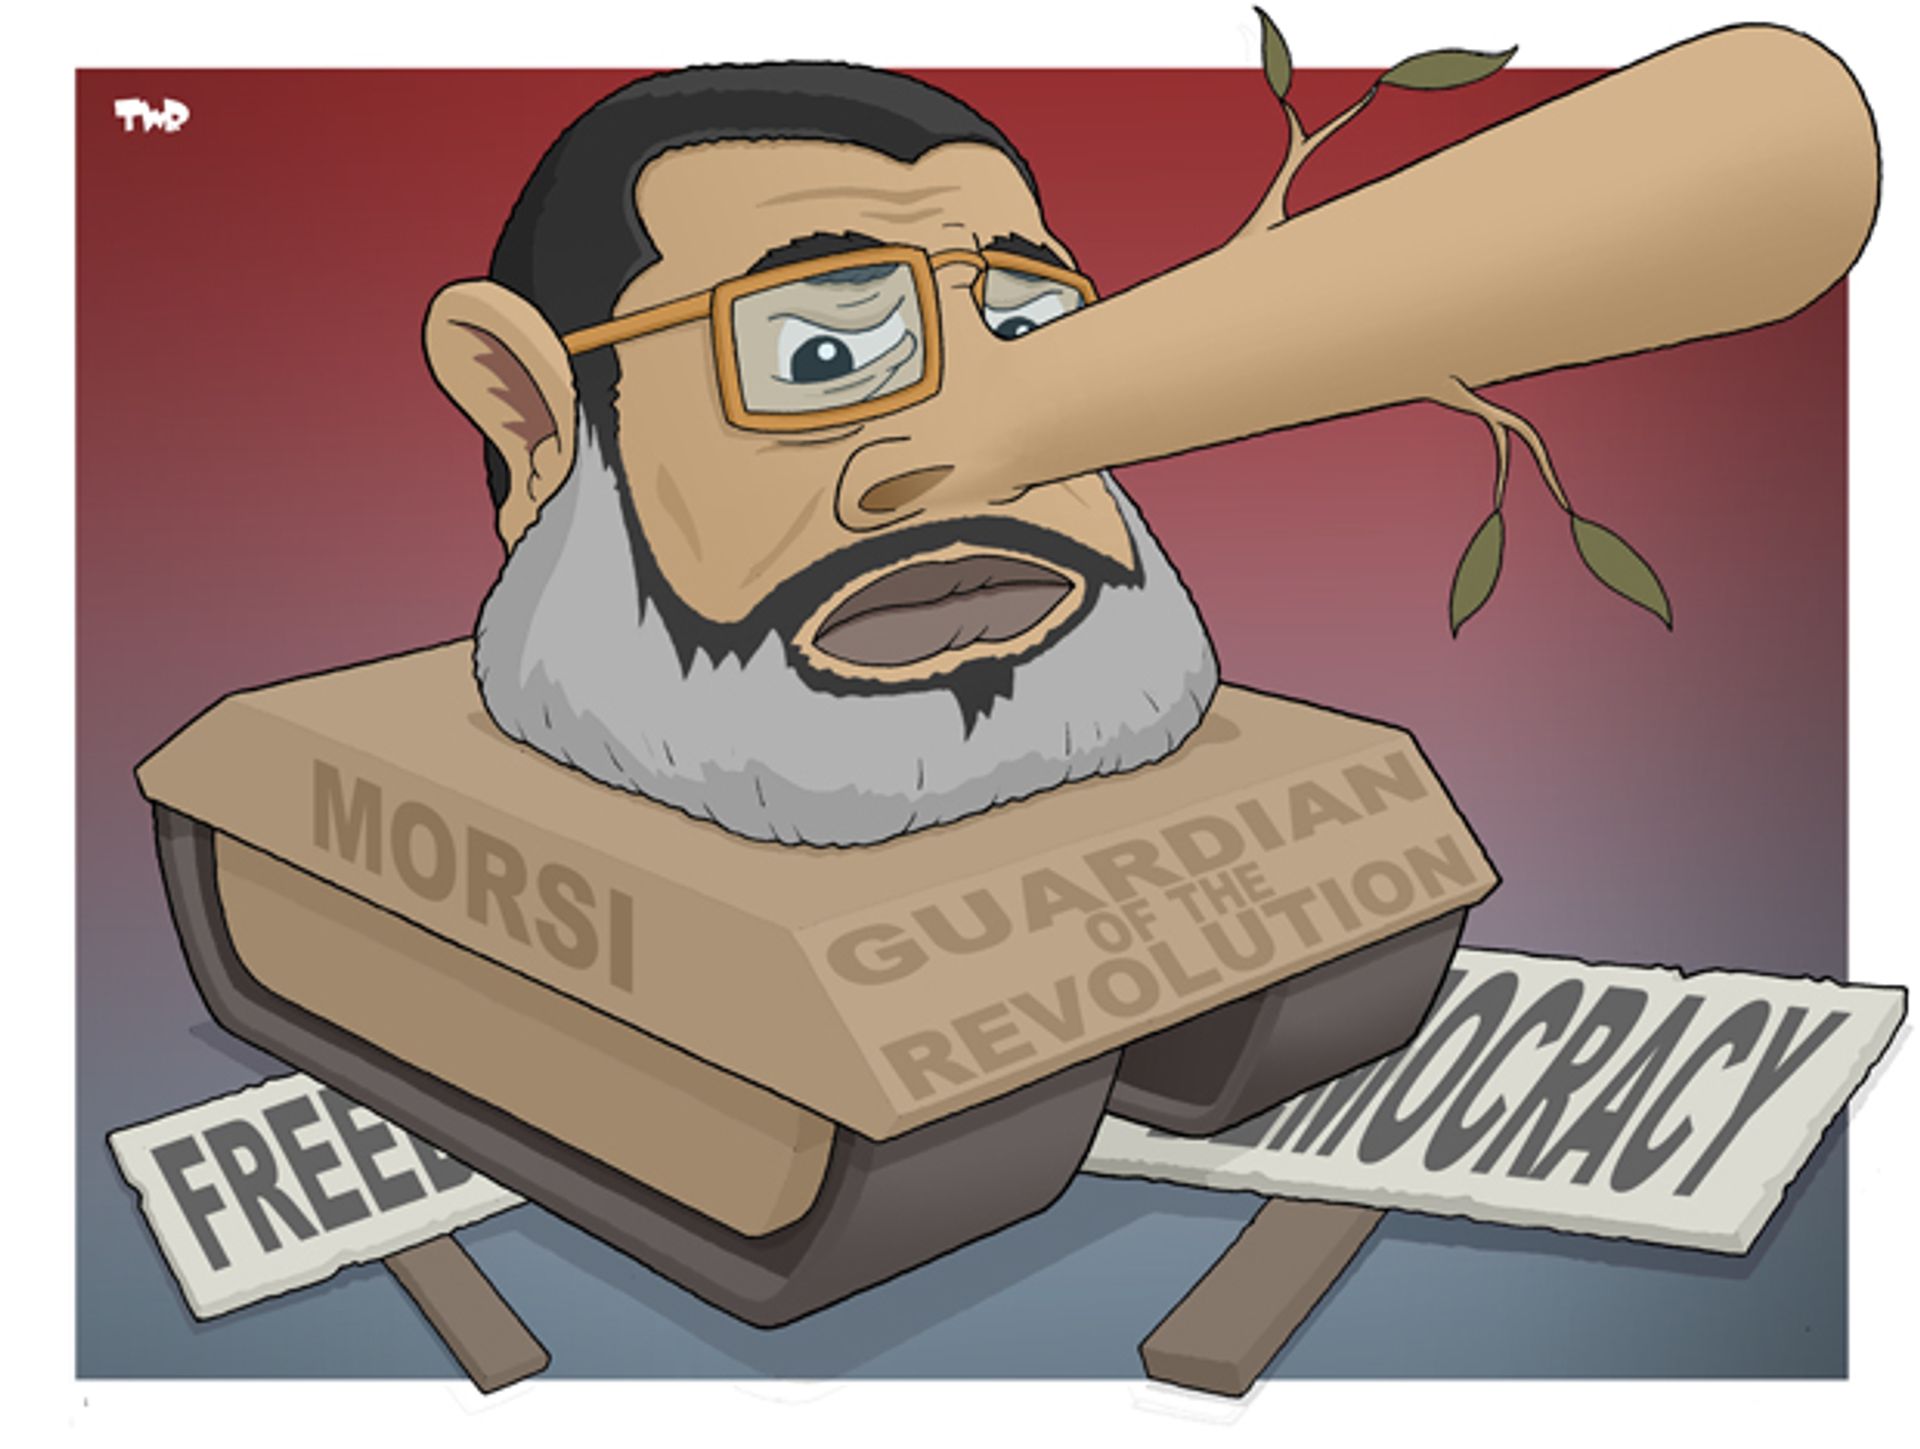 Morsi.jpeg